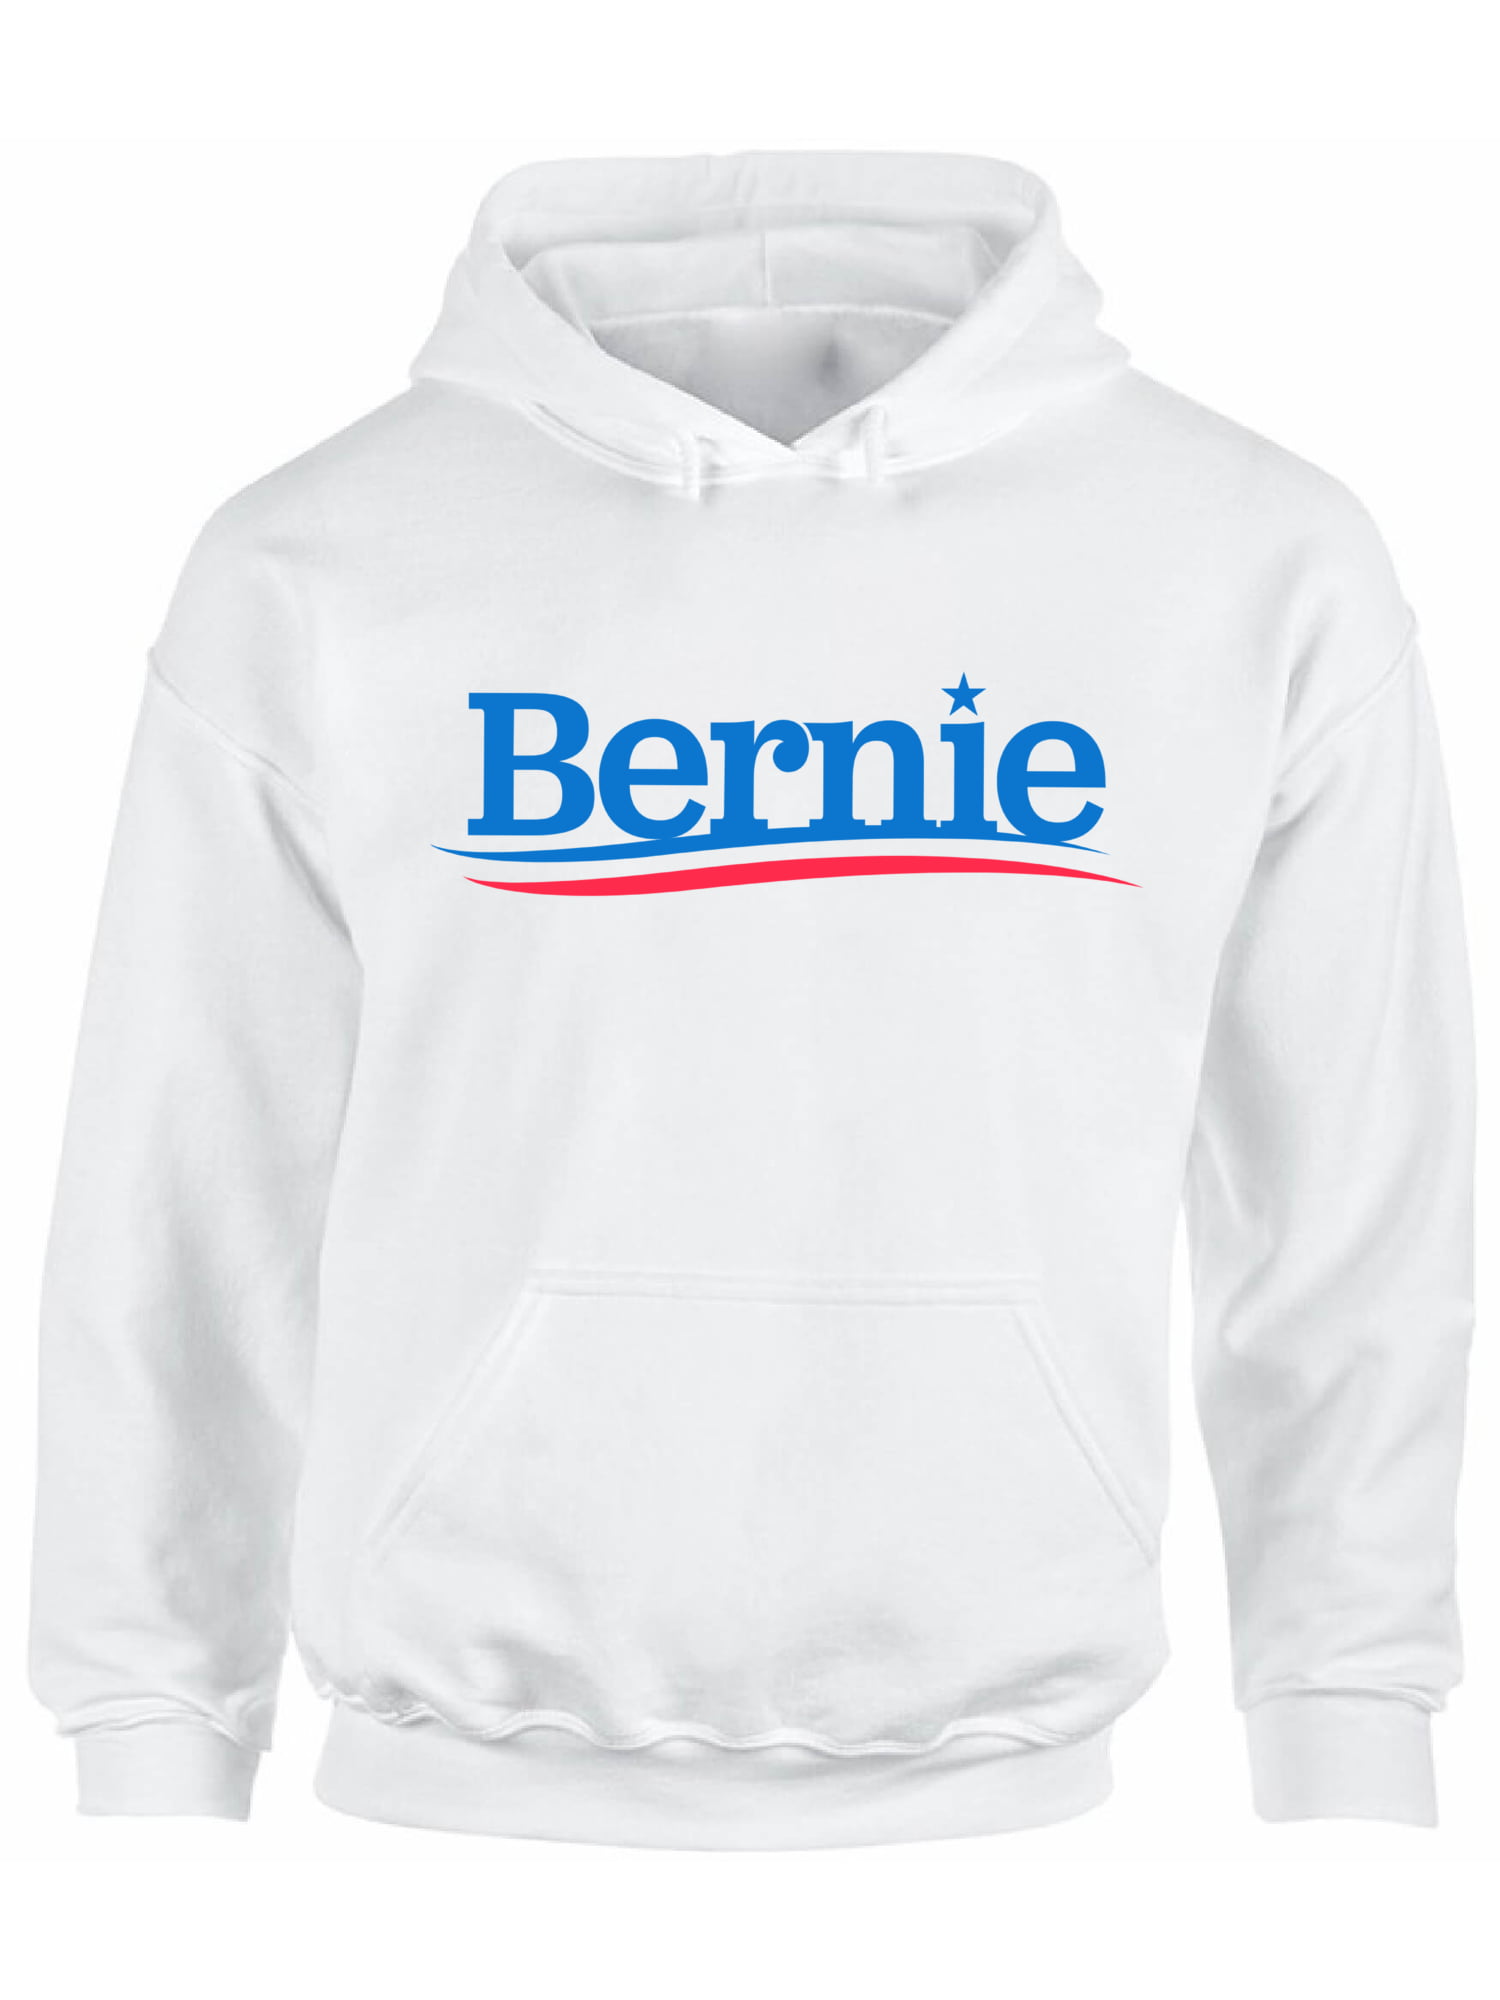 Bernie Sanders 2020 Jumper Sweatshirt Top USA President Election Vote Trump 